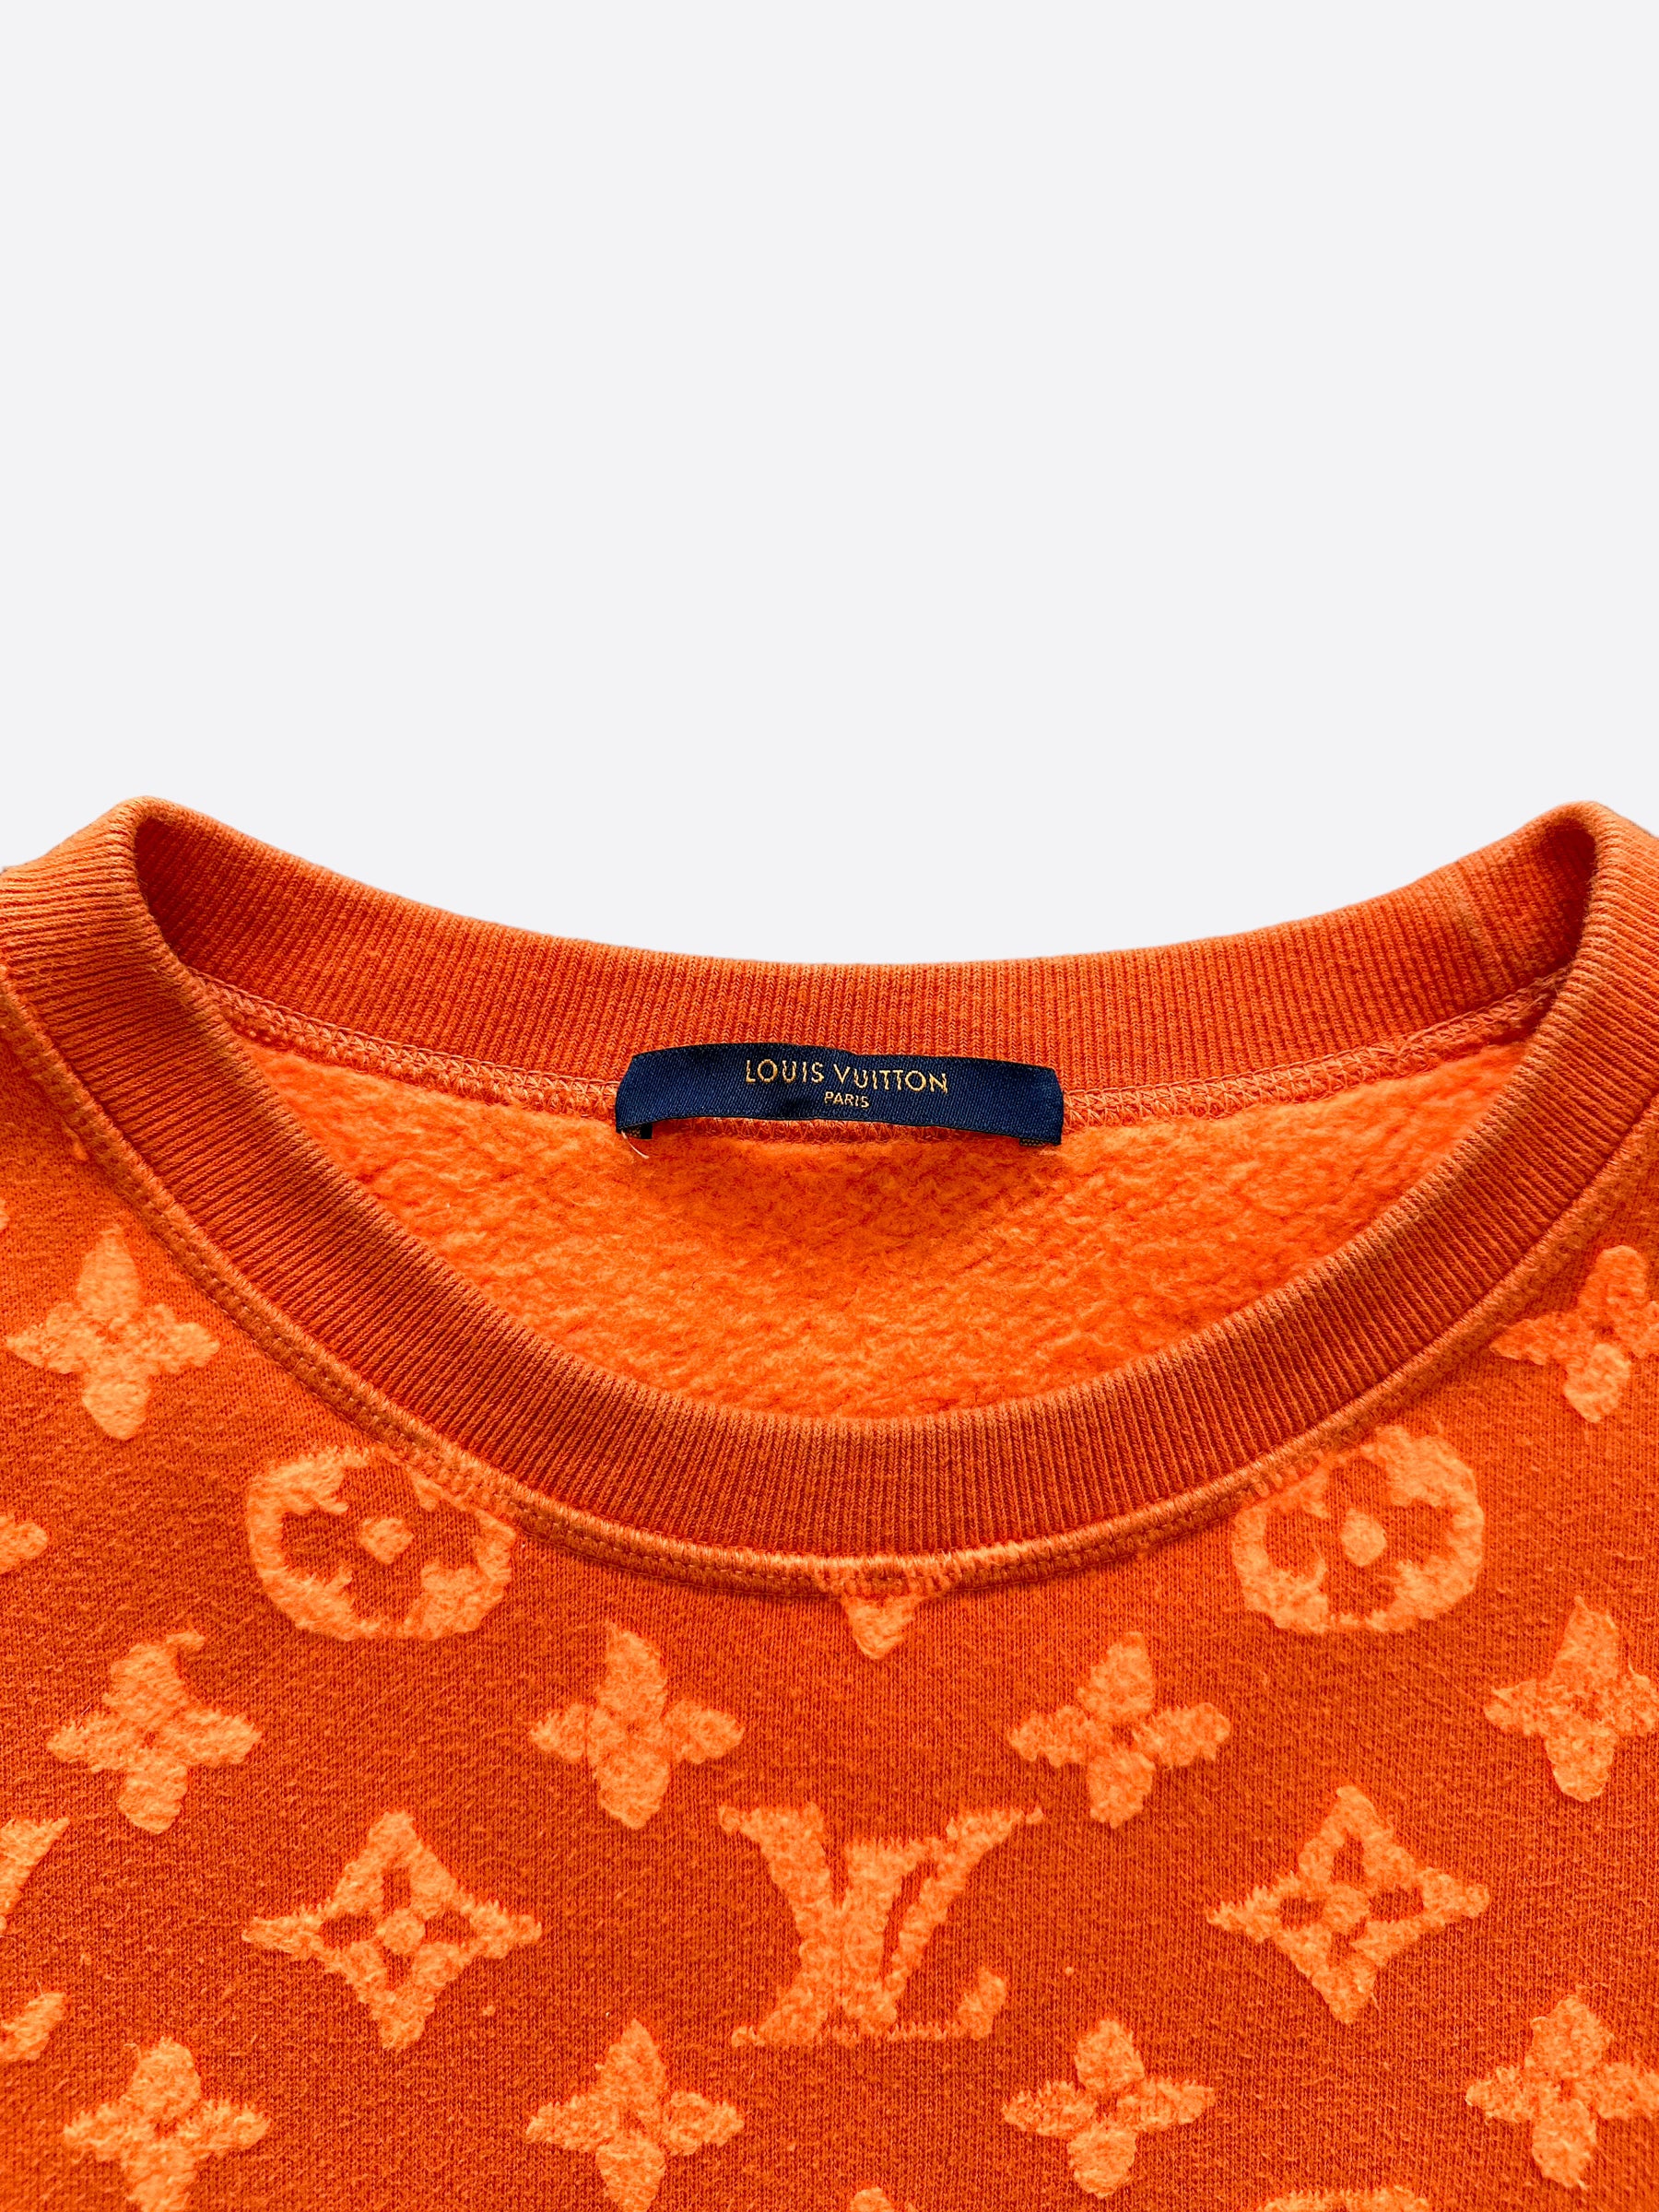 Sweatshirt Louis Vuitton Orange size S International in Cotton - 26610318